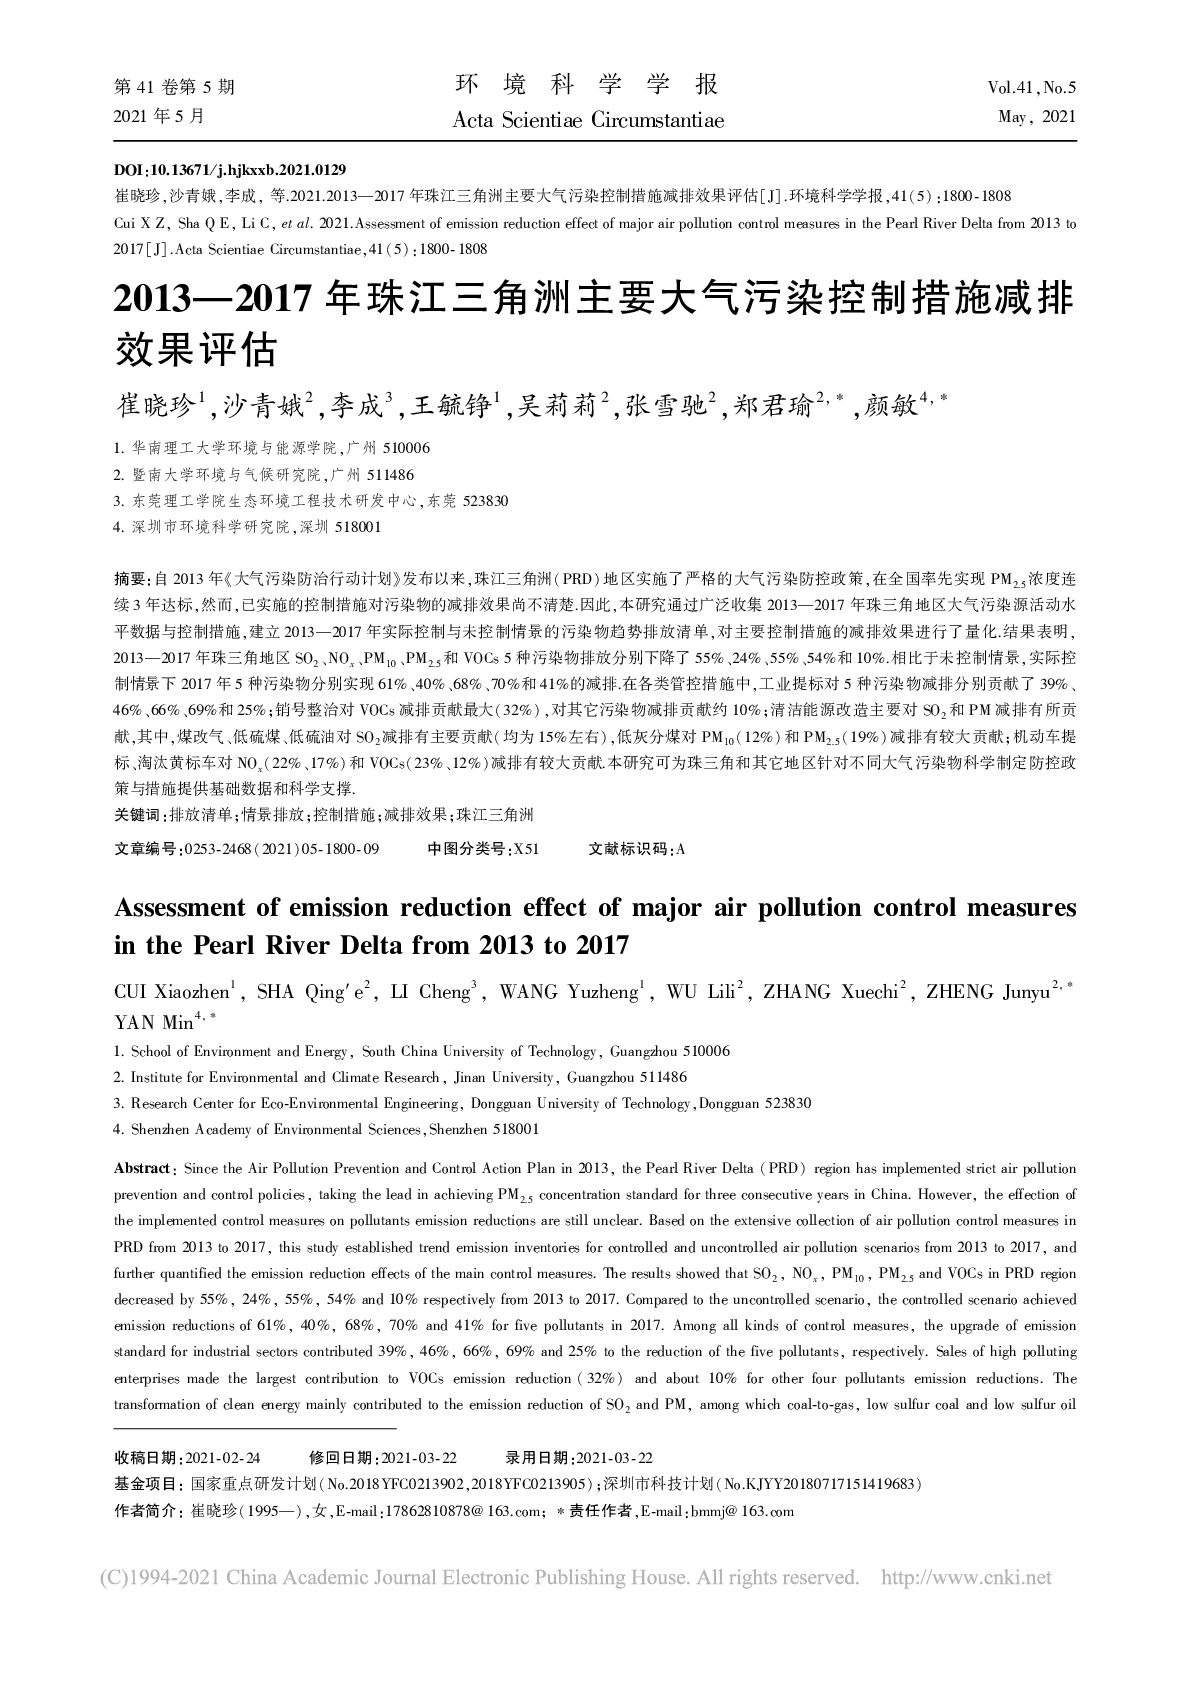 2013-2017年珠江三角洲主要大气污染控制措施减排效果评估